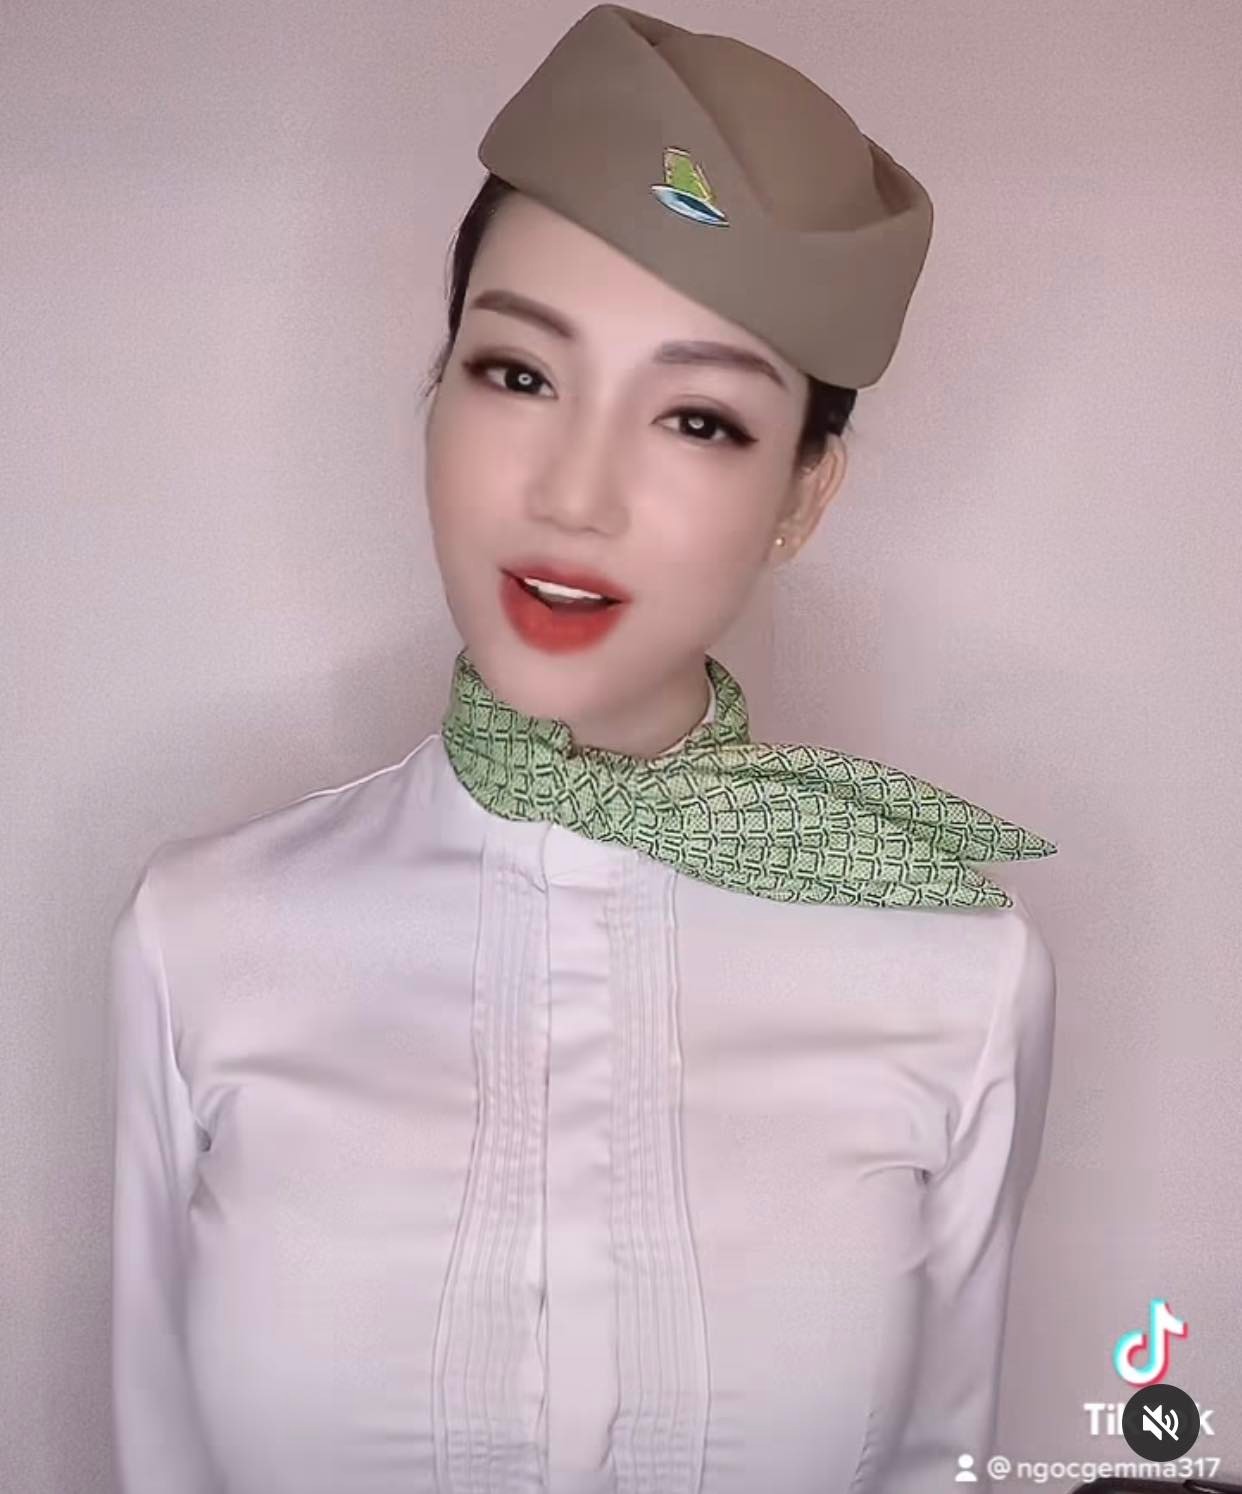 Nguyễn Minh Ngọc là nữ TVHK Bamboo Airways sở hữu lượng fan đông đảo trên mạng xã hội nhờ nhan sắc xinh đẹp cùng vóc dáng gợi cảm.